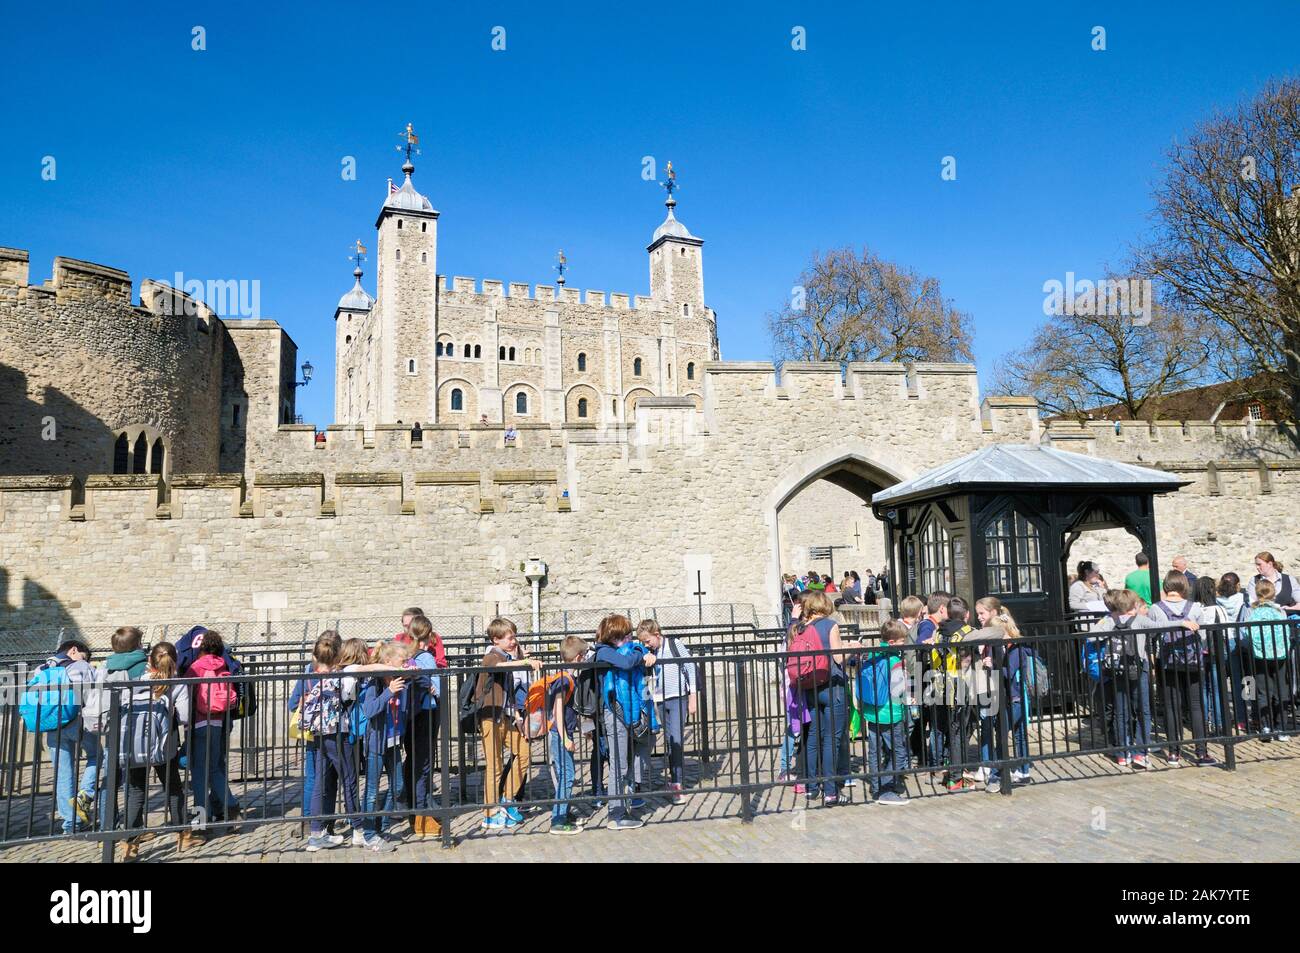 Schule Kinder queuing außerhalb der Mauern von Henry III watergate Eingang mit der berühmten Weißen Turm im Hintergrund, der Tower von London, England, Großbritannien Stockfoto